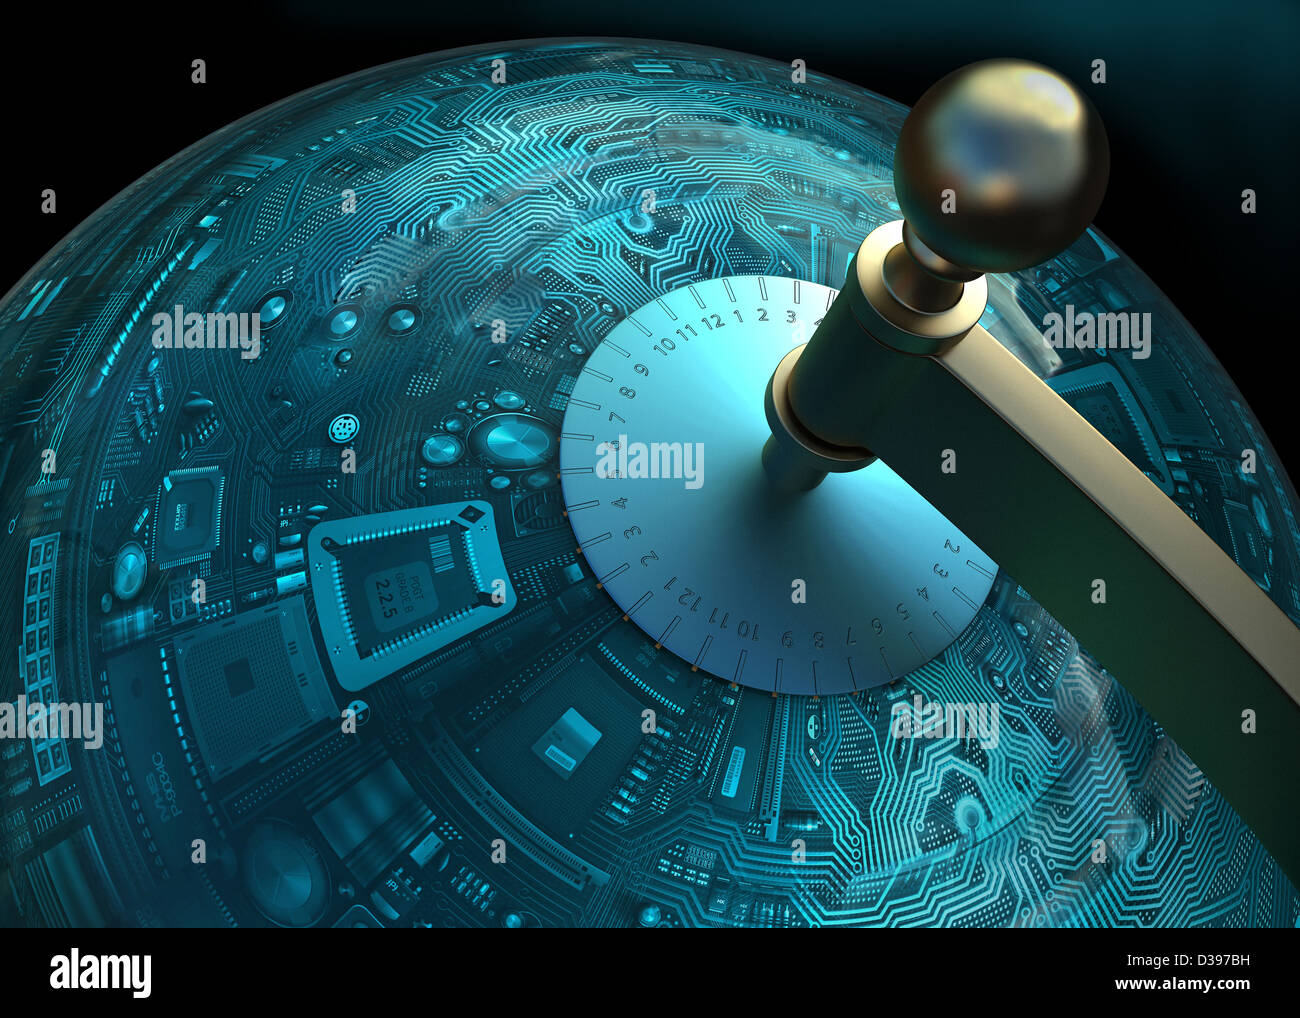 Image conceptuelle de circuit imprimé en forme de globe dépeignant la mondialisation de la technologie Banque D'Images